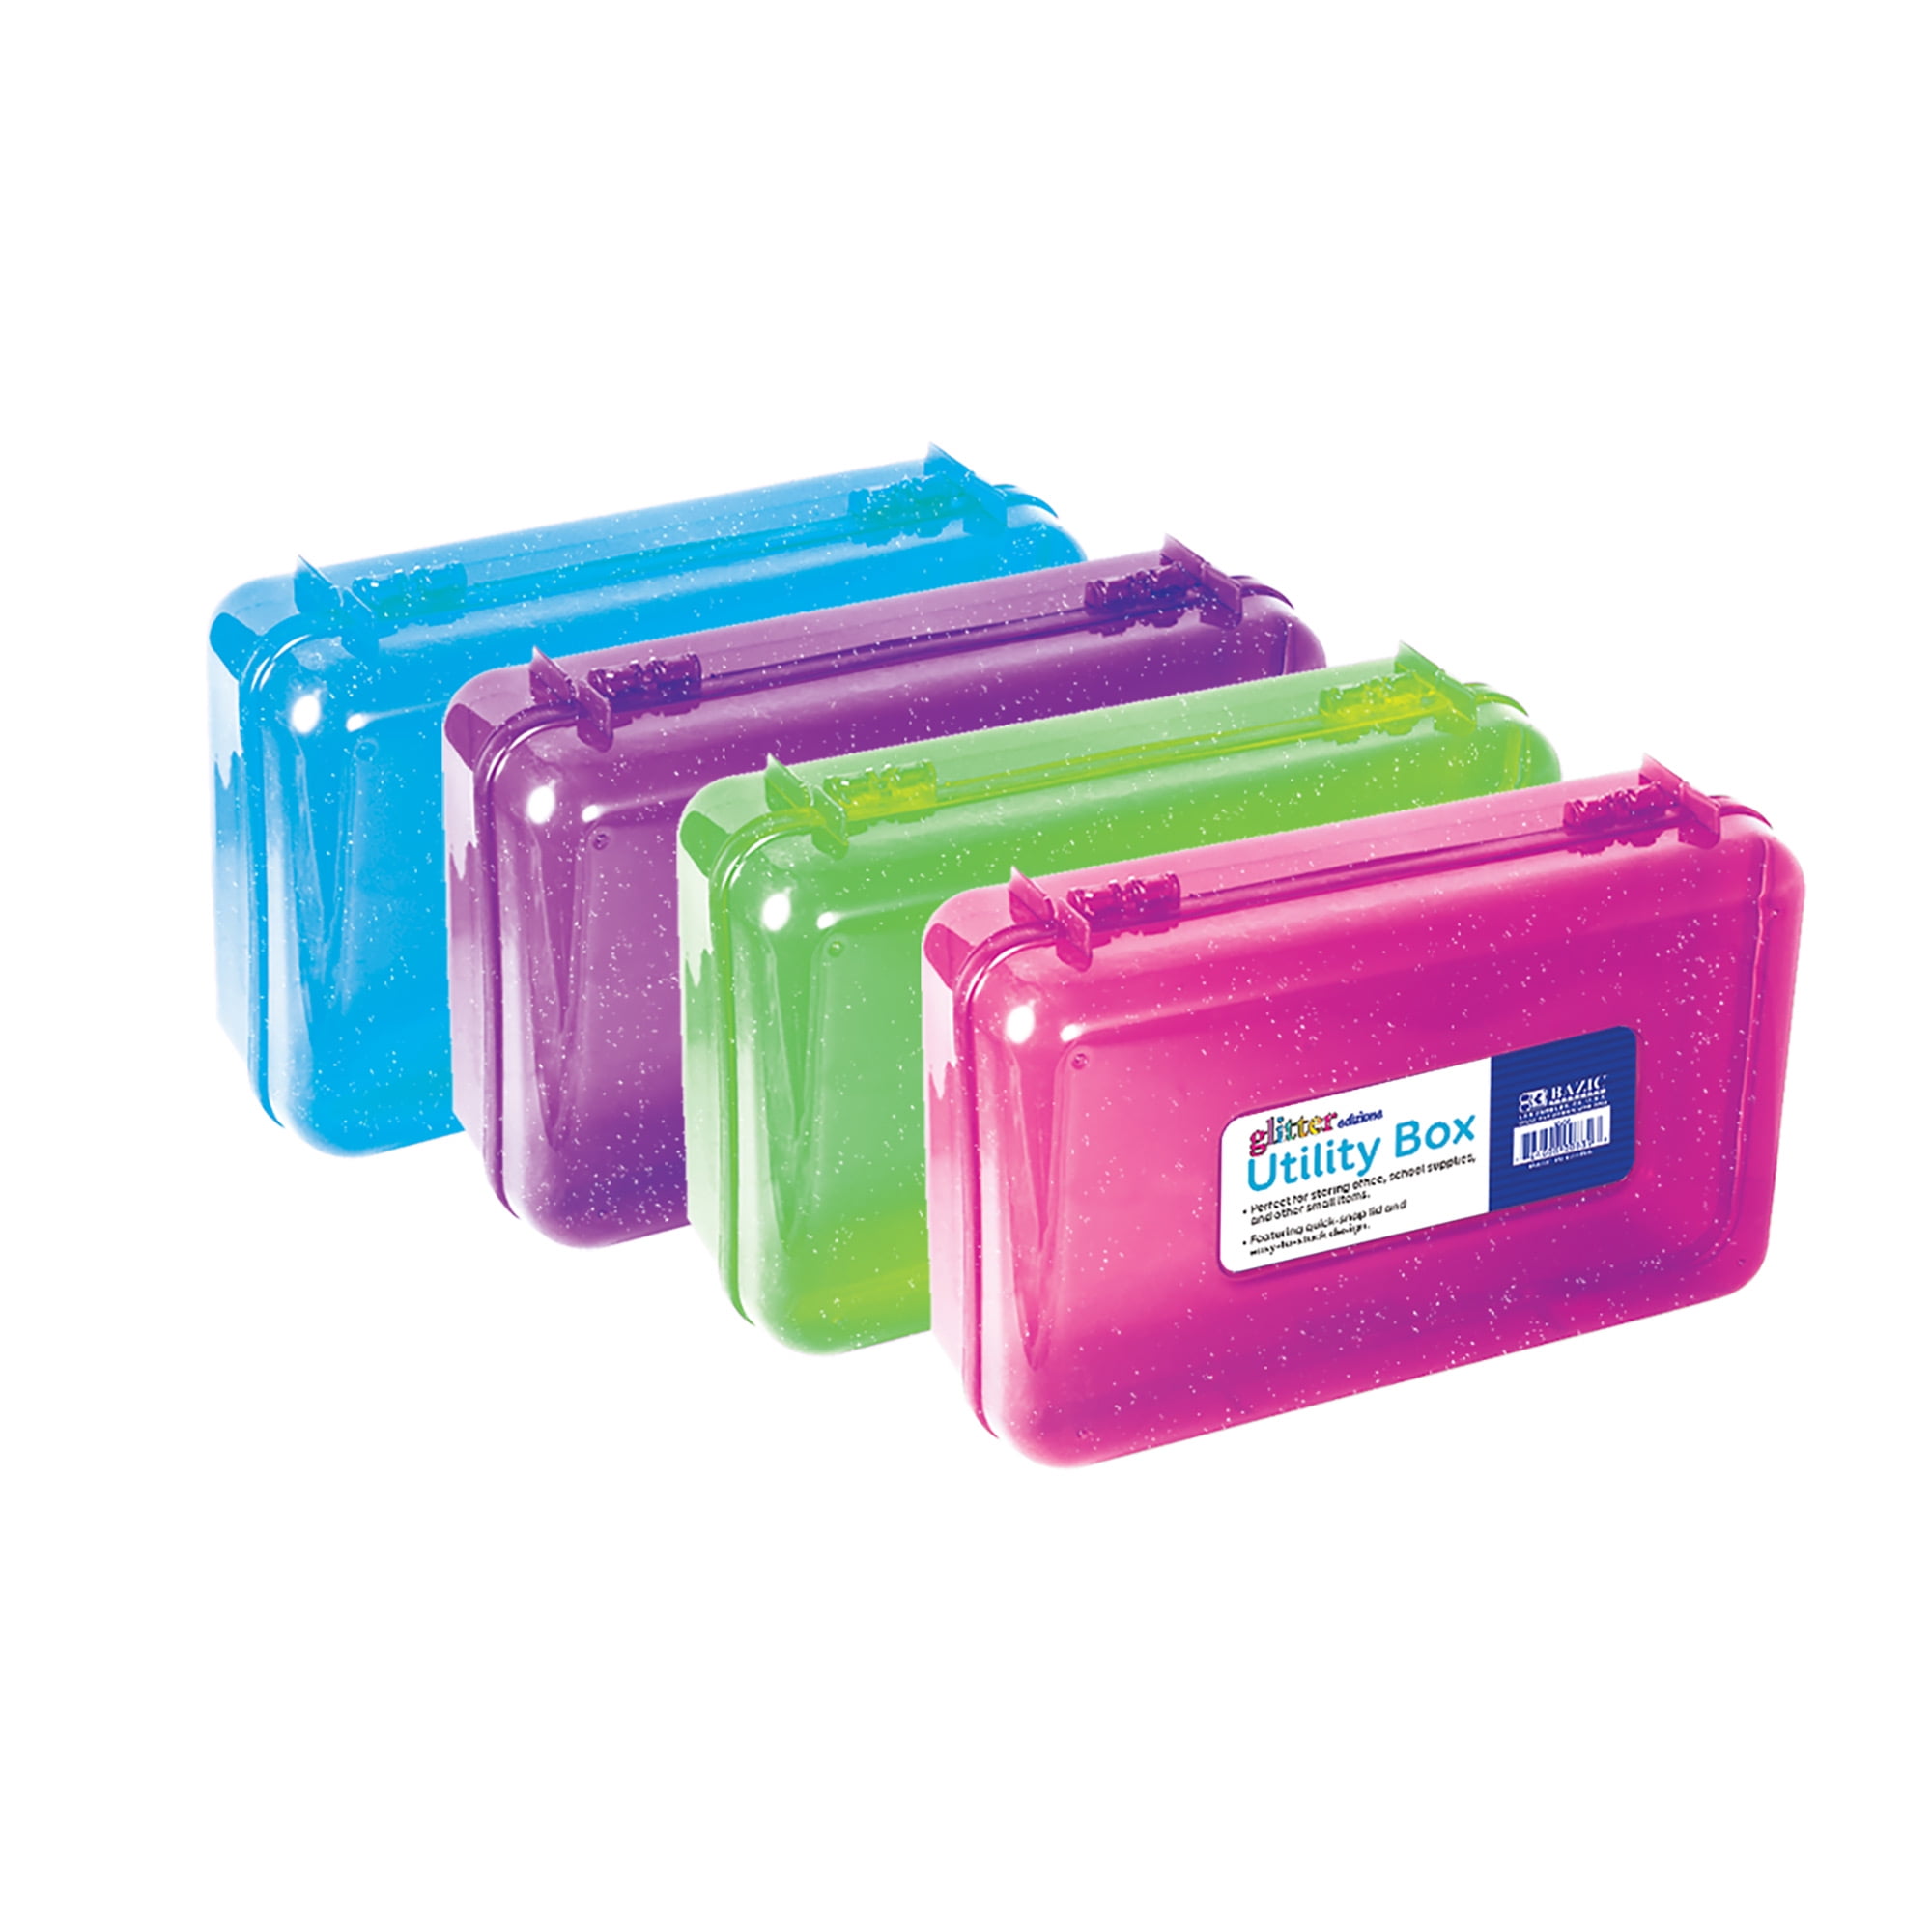 Assorted Colors Cubby Bin Pencil box Storage Desk Plastic Organizer 4-Pack BAZIC Glitter Bright Color Multipurpose Utility Box 